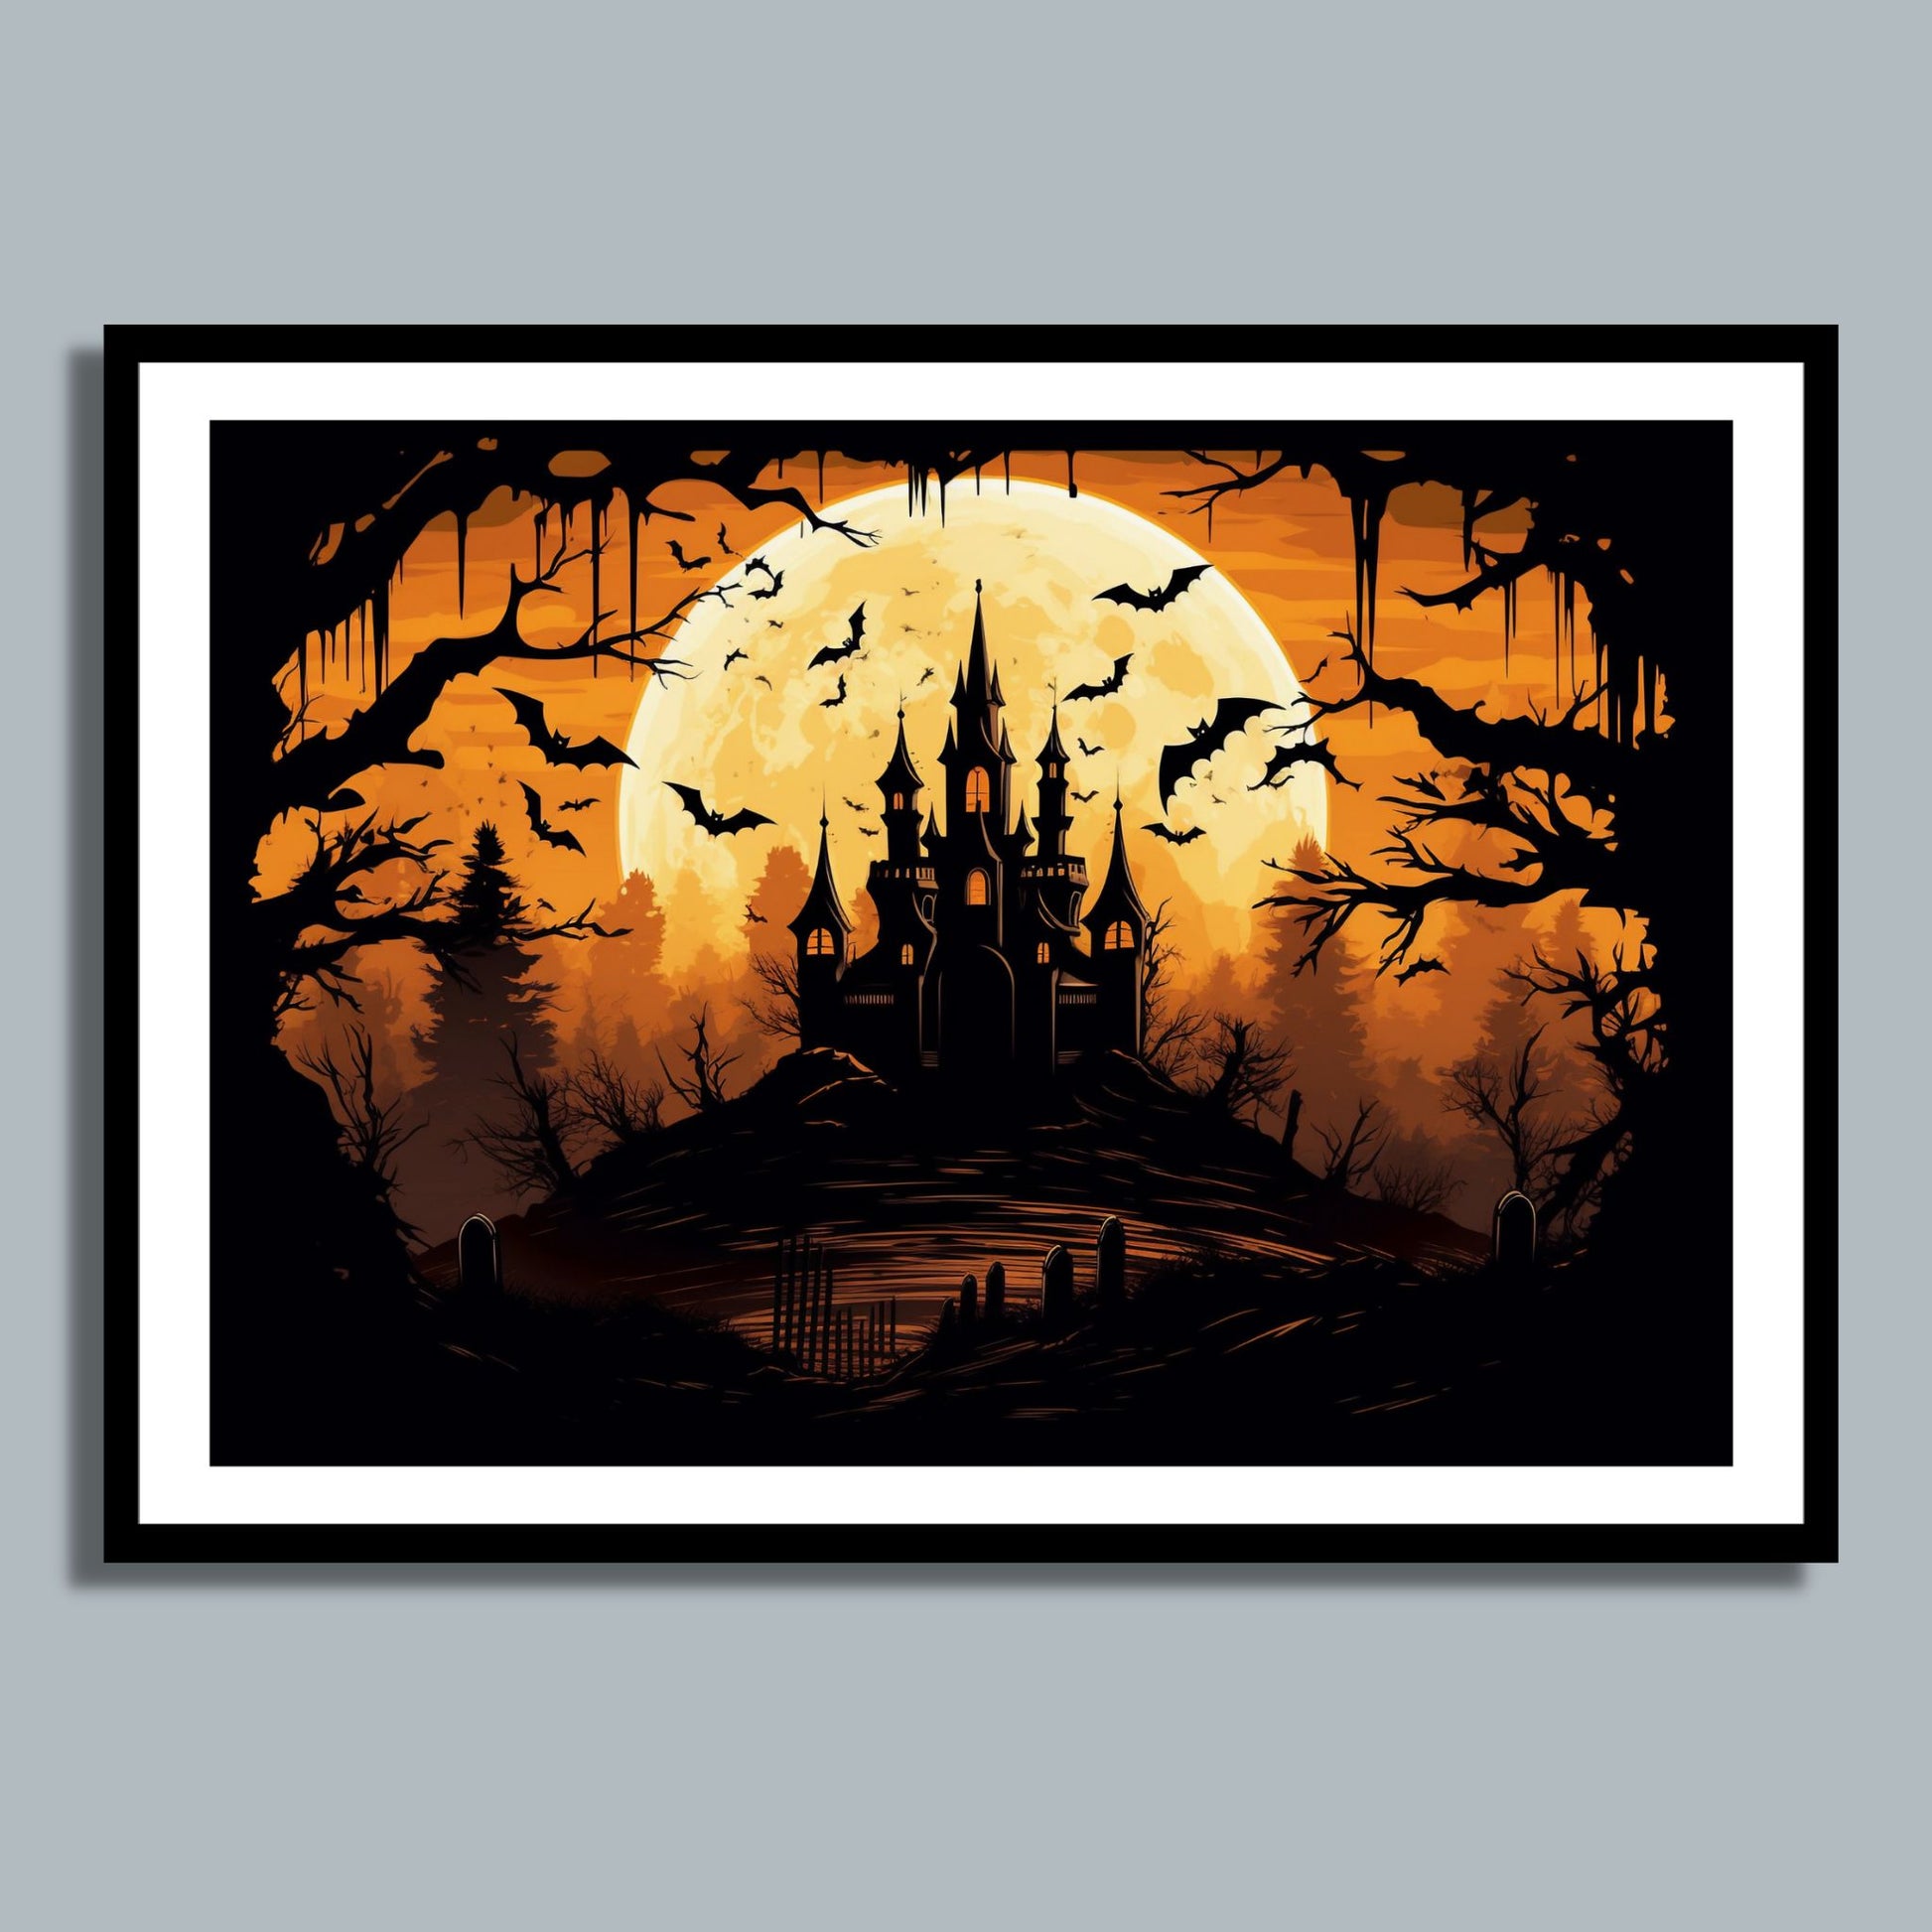 Creepy plakat med motiv av Halloween slott ved fullmåne. Motivet viser nattmørke med flaggermus og lys i vinduene. Bildet som har en hvit kant, er rammet inn i sort ramme og henger på en vegg.